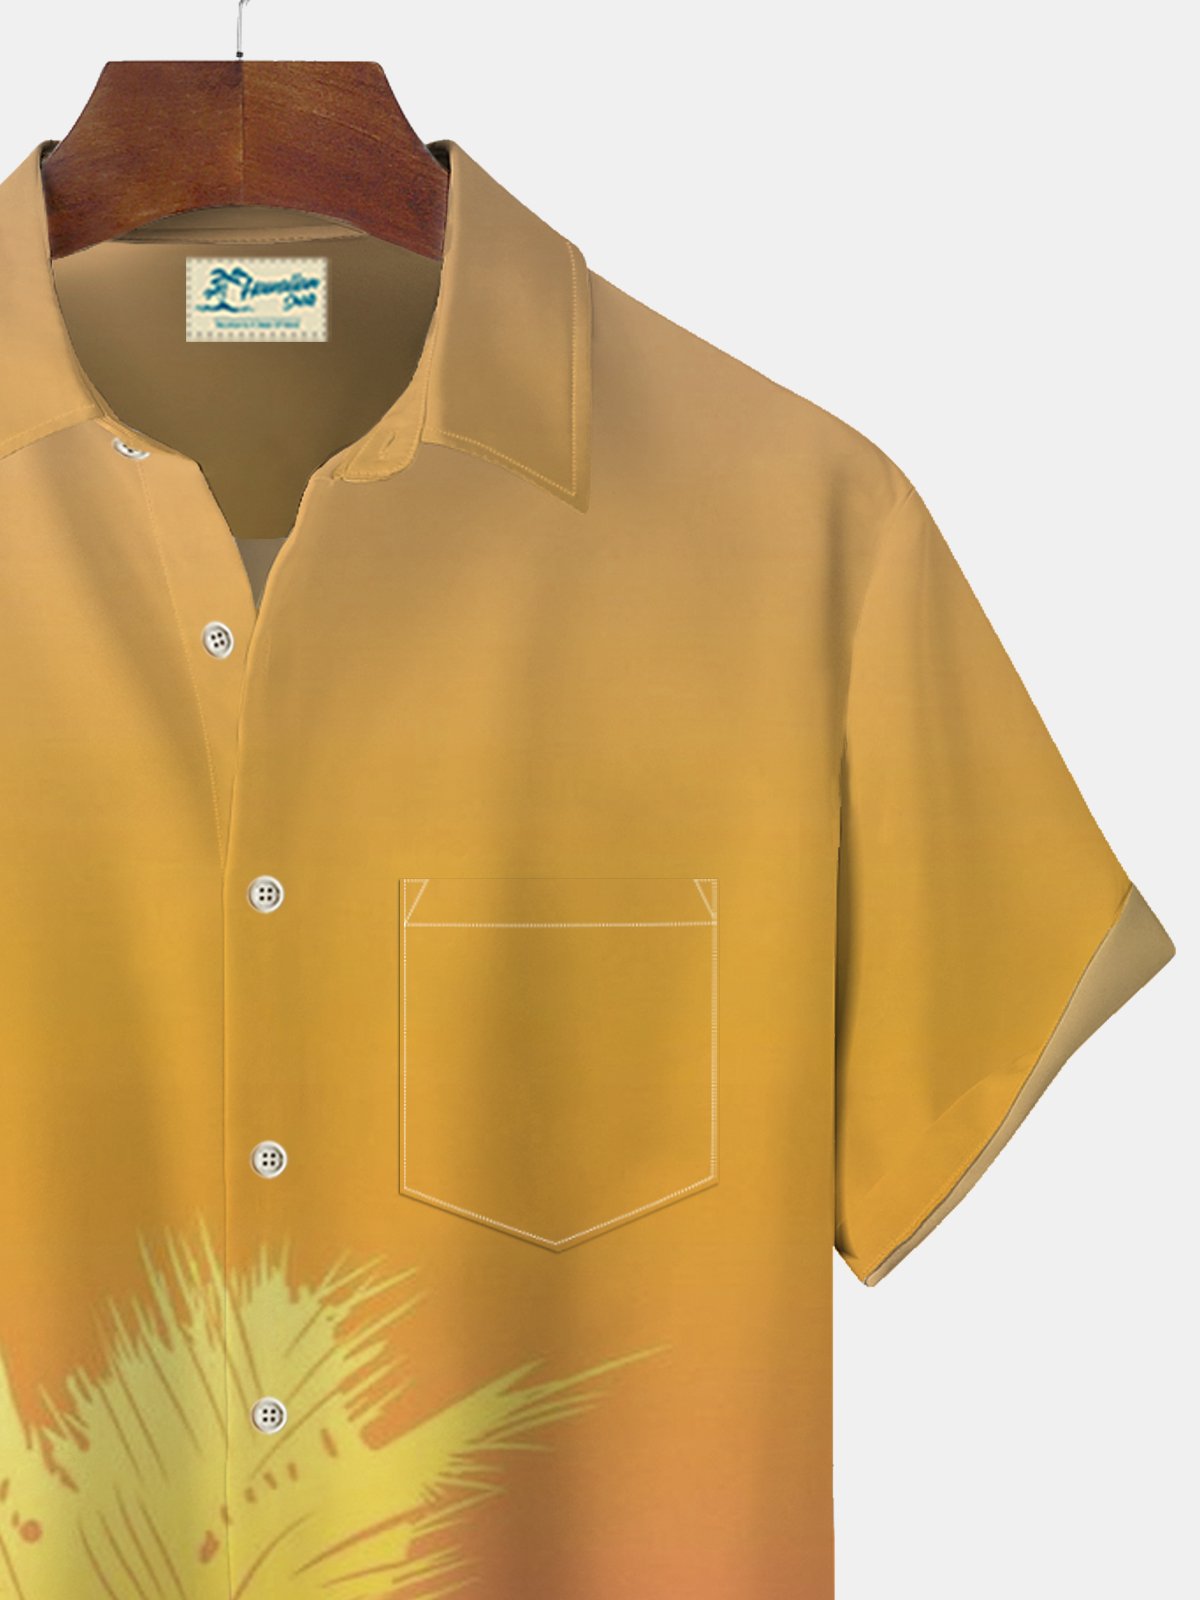 JoyMitty Ombre Coconut Tree Print Beach Men's Hawaiian Oversized Short Sleeve Shirt with Pockets